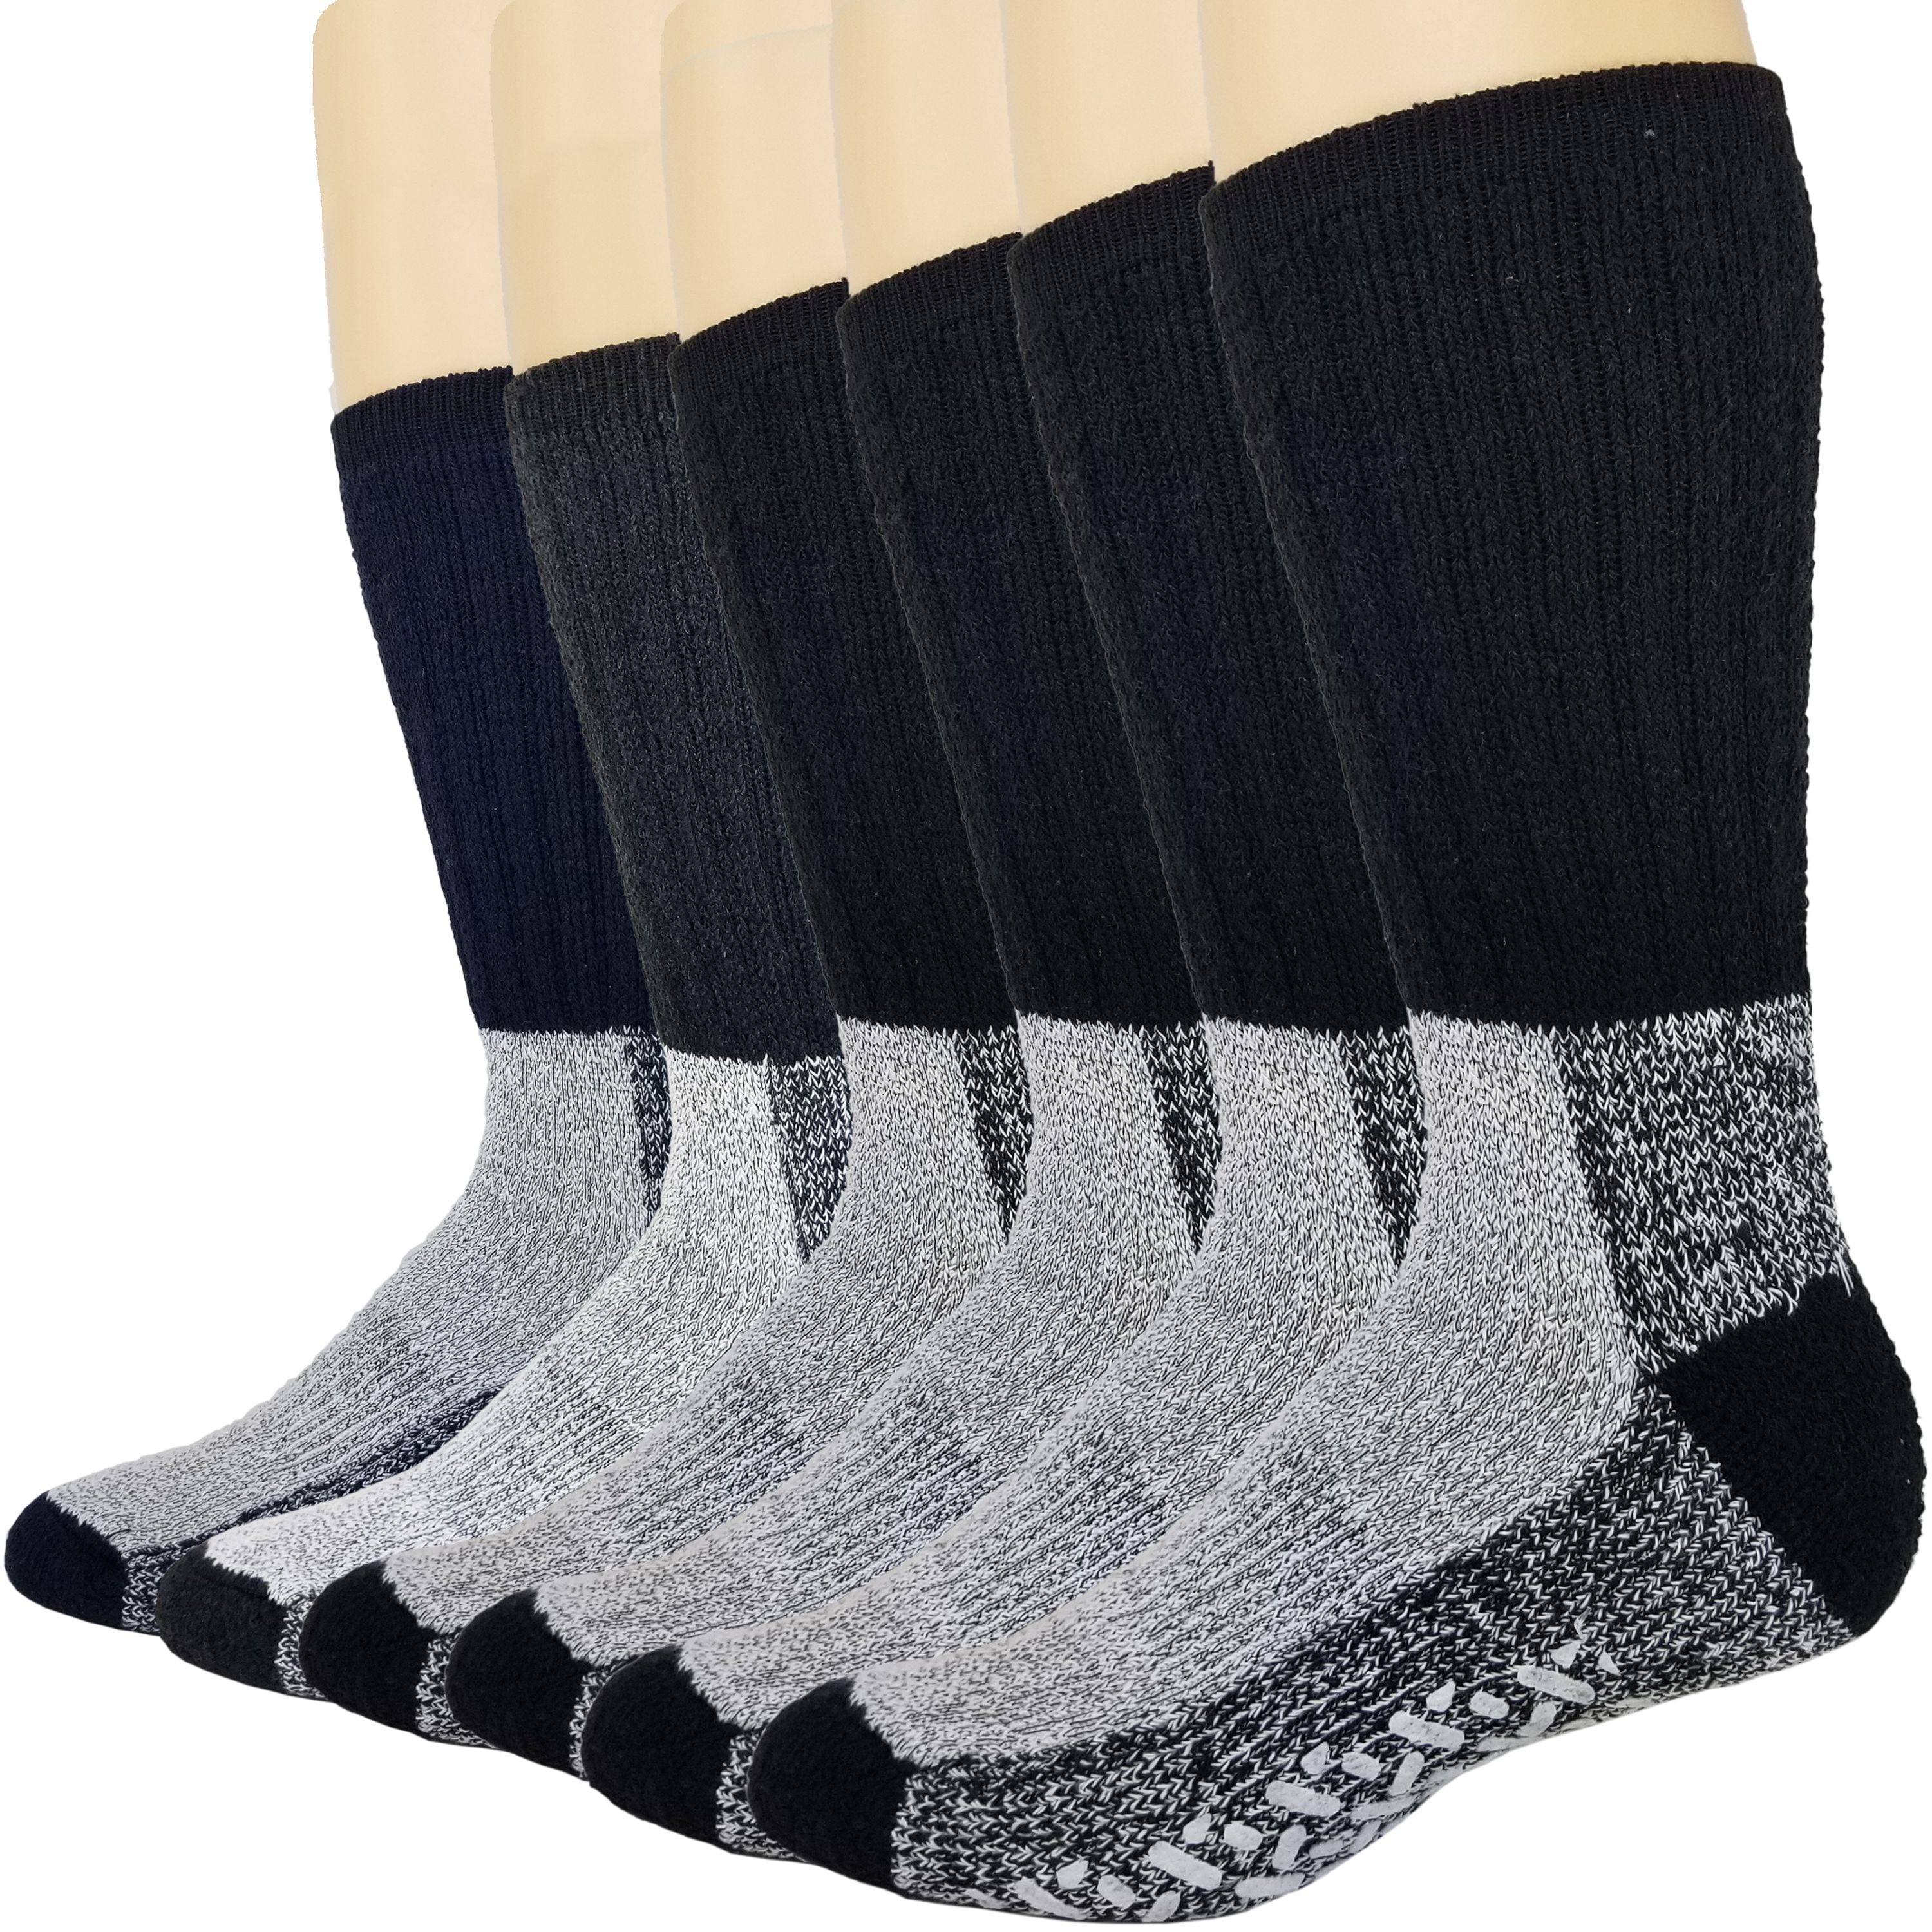 6 pairs ladies thermal socks.warmth.black 